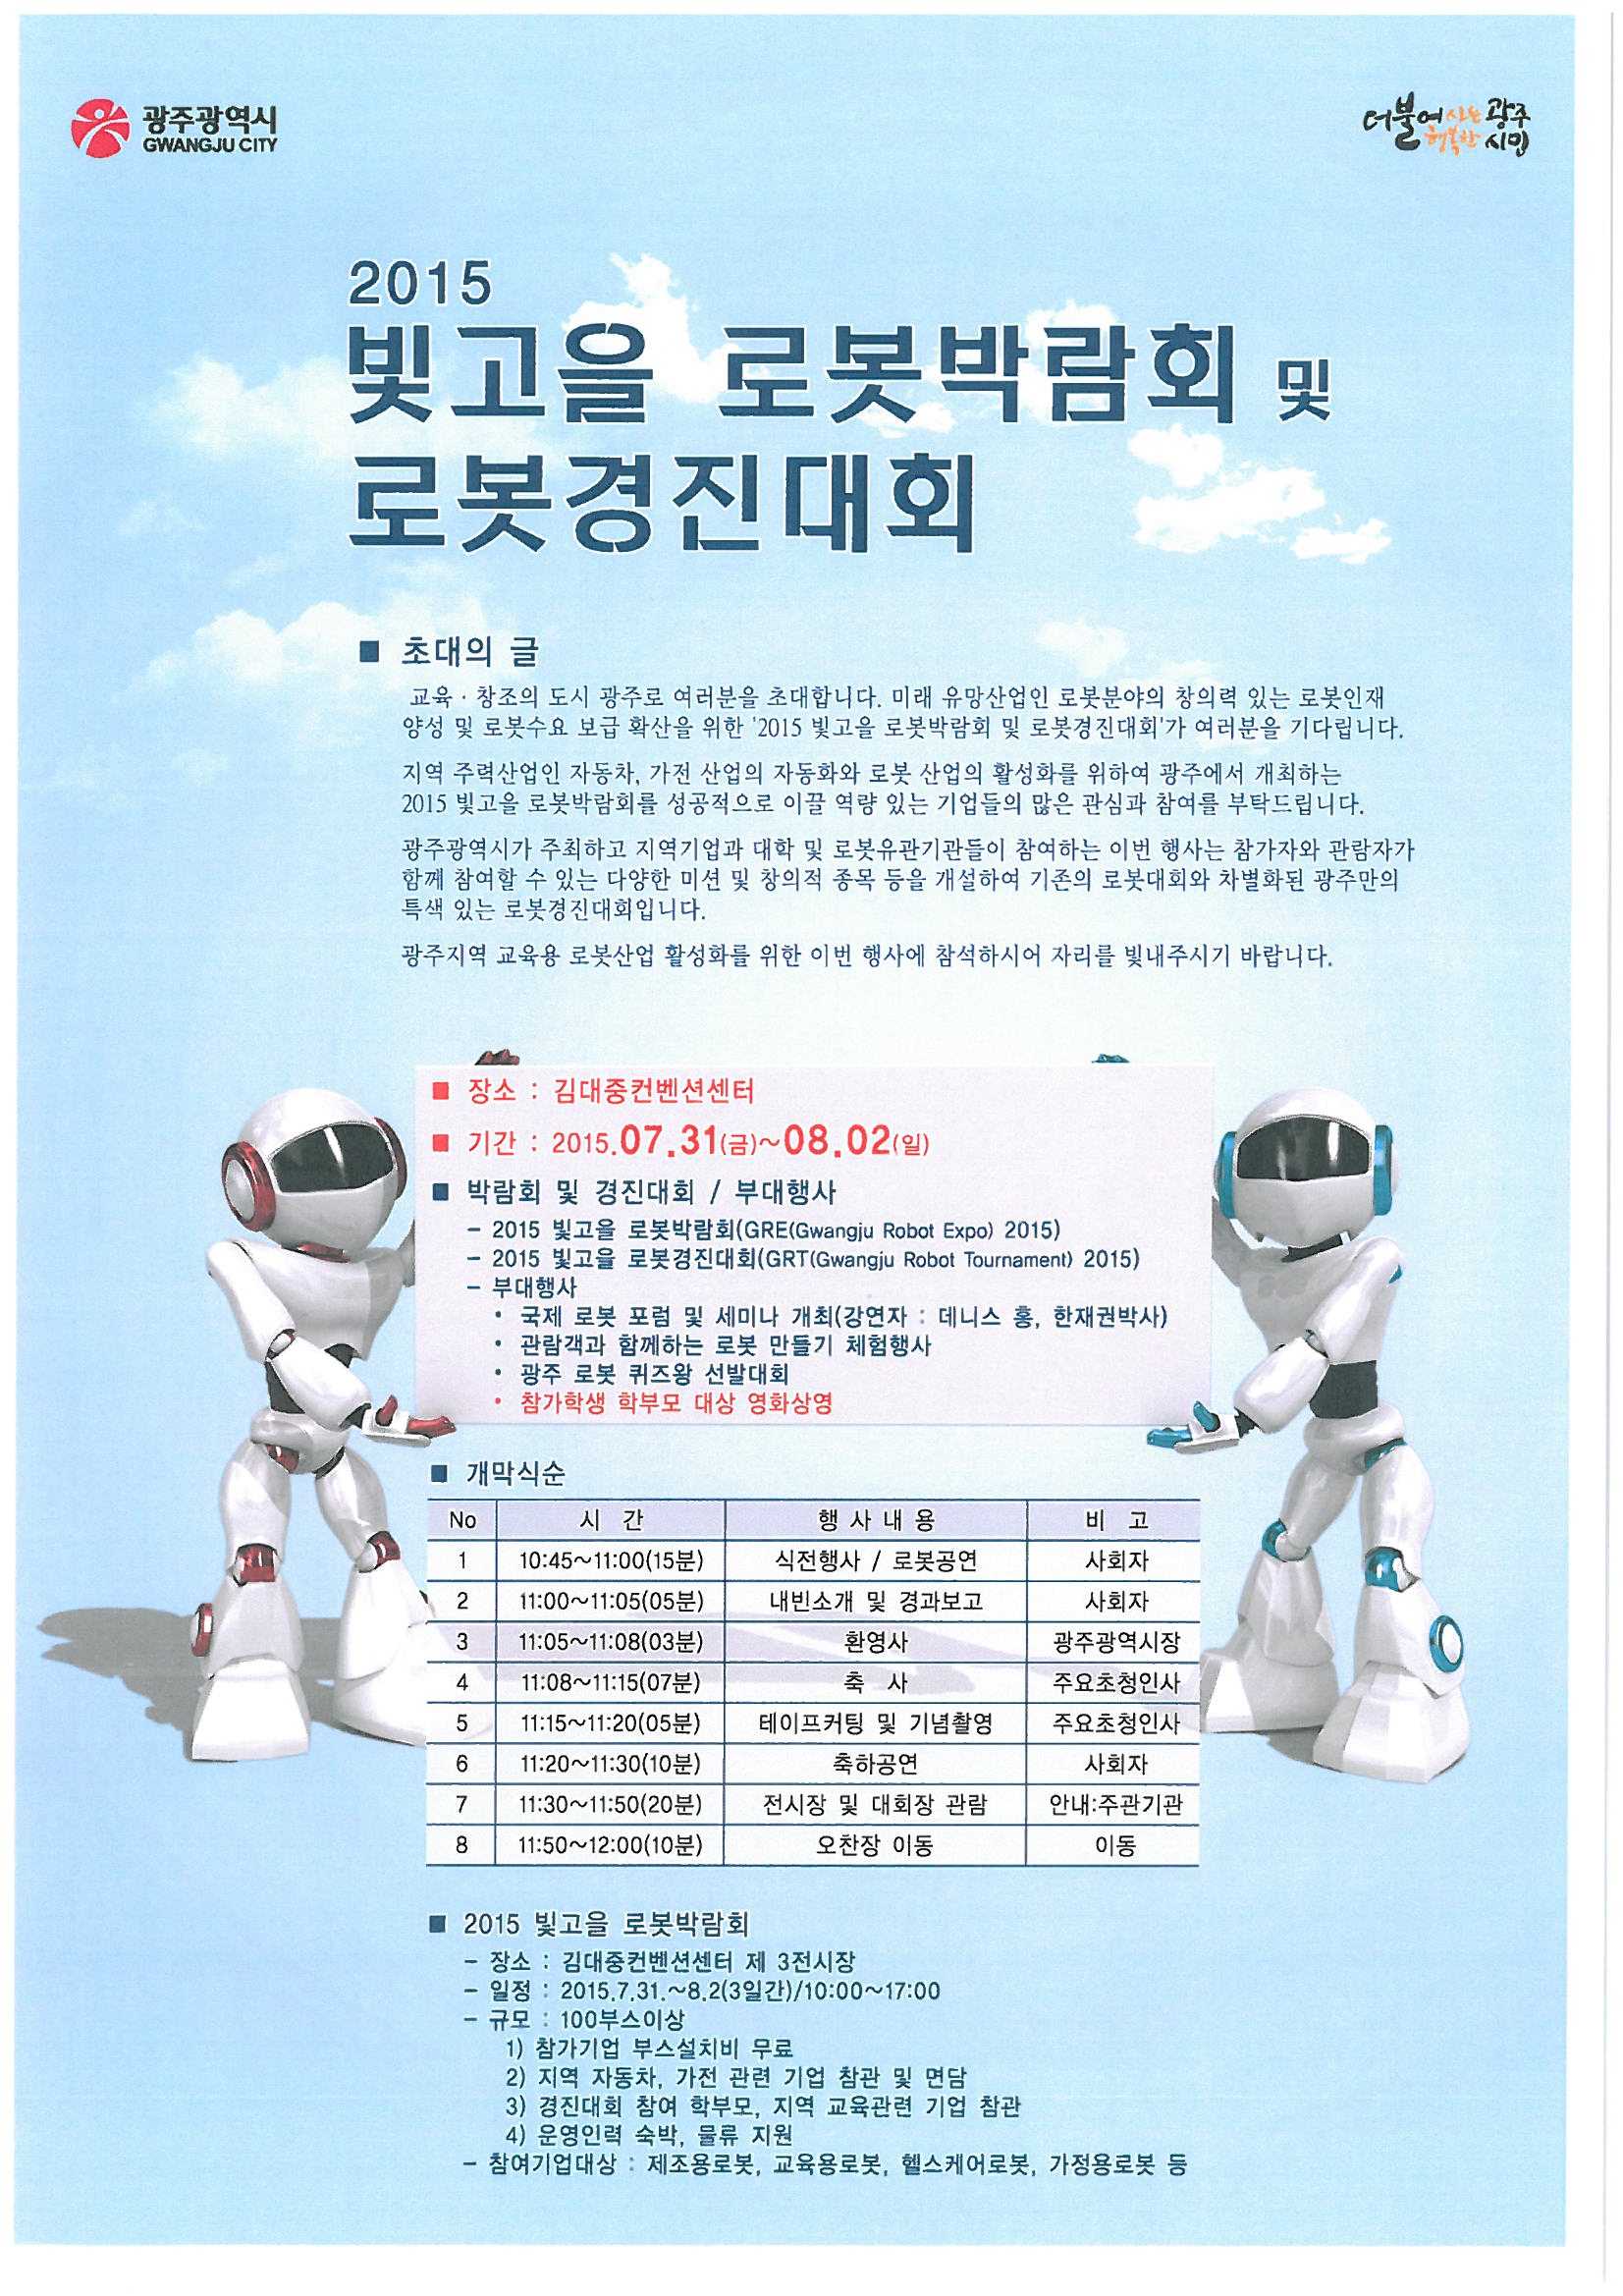 2015 빛고을 로봇박람회 및 로봇경진대회 홍보리플렛_1.jpg